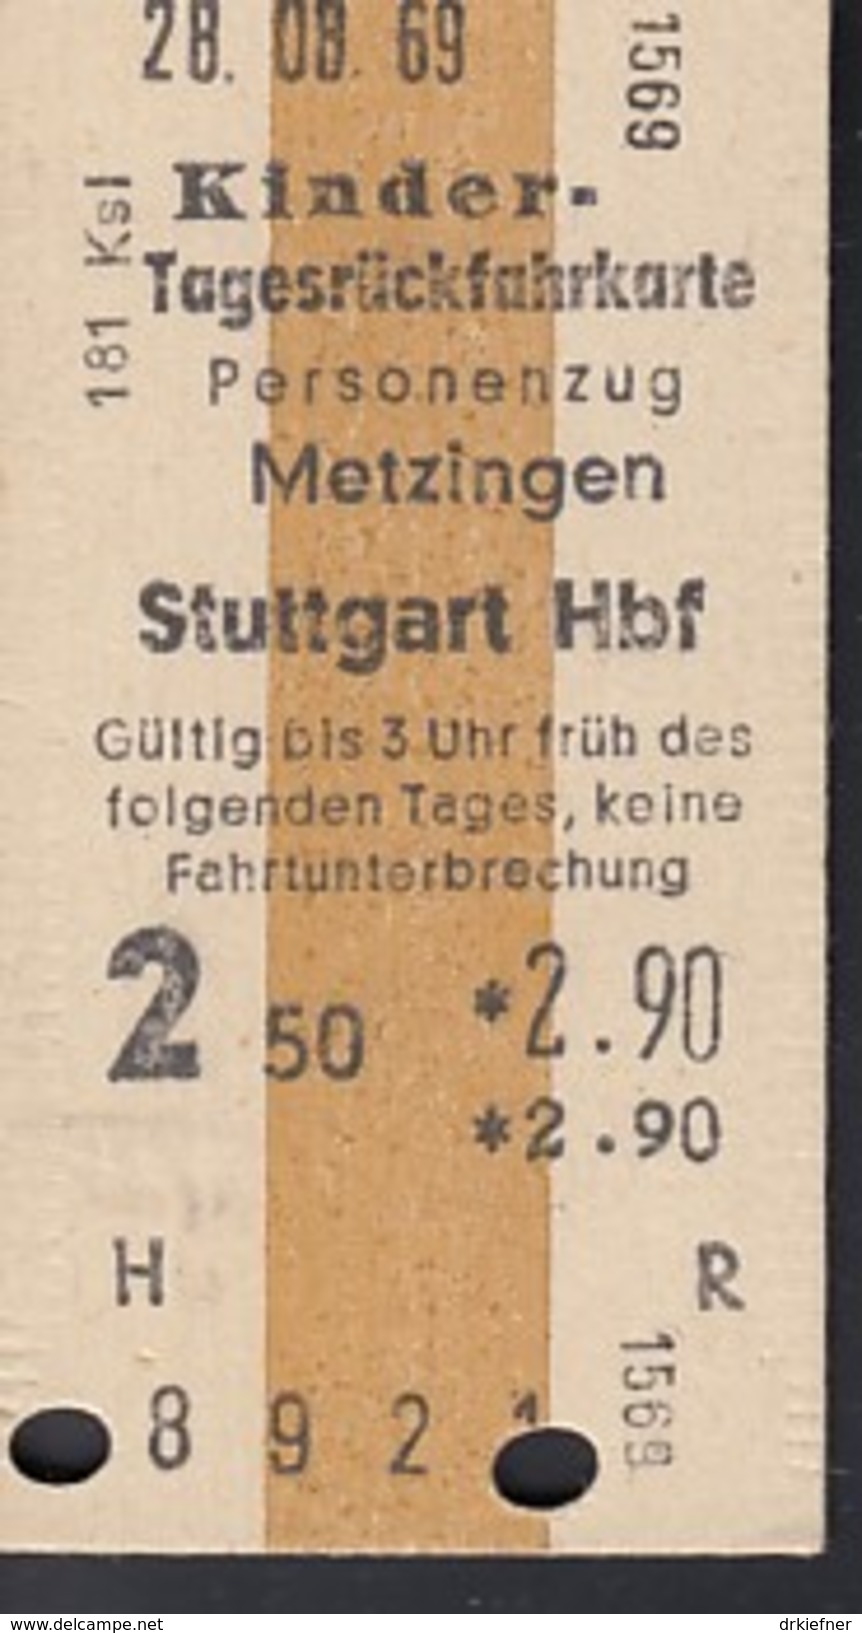 Metzingen - Stuttgart Hbf Am 8.4.1970 - 2,90 DM, Kinder-Tagesrück-Fahrkar Te, Ticket, Billet - Europa